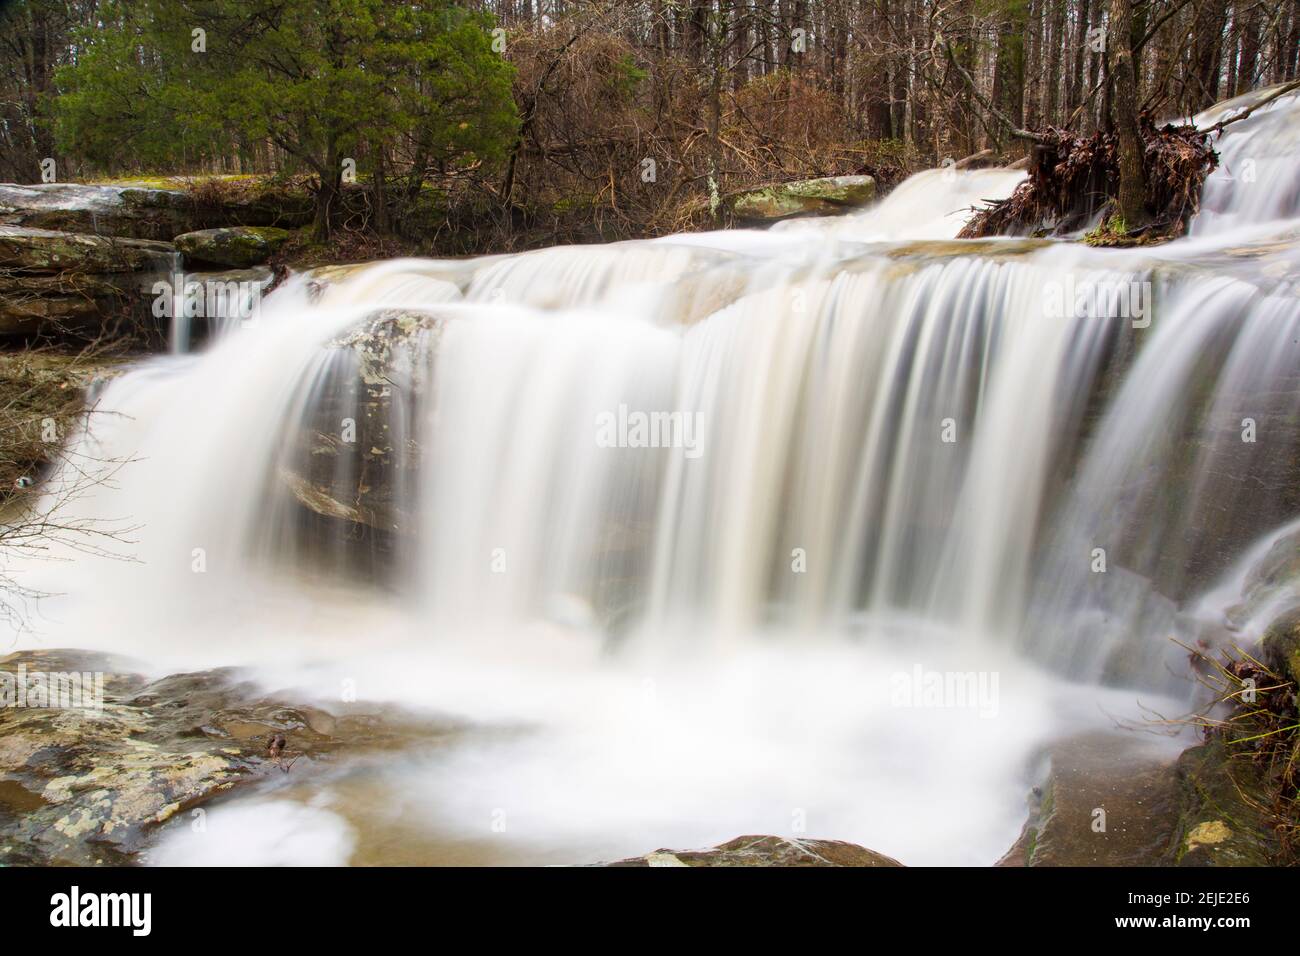 Wasser fällt aus Felsen in einem Wald, Burden Falls, Shawnee National Forest, Pope County, Illinois, USA Stockfoto